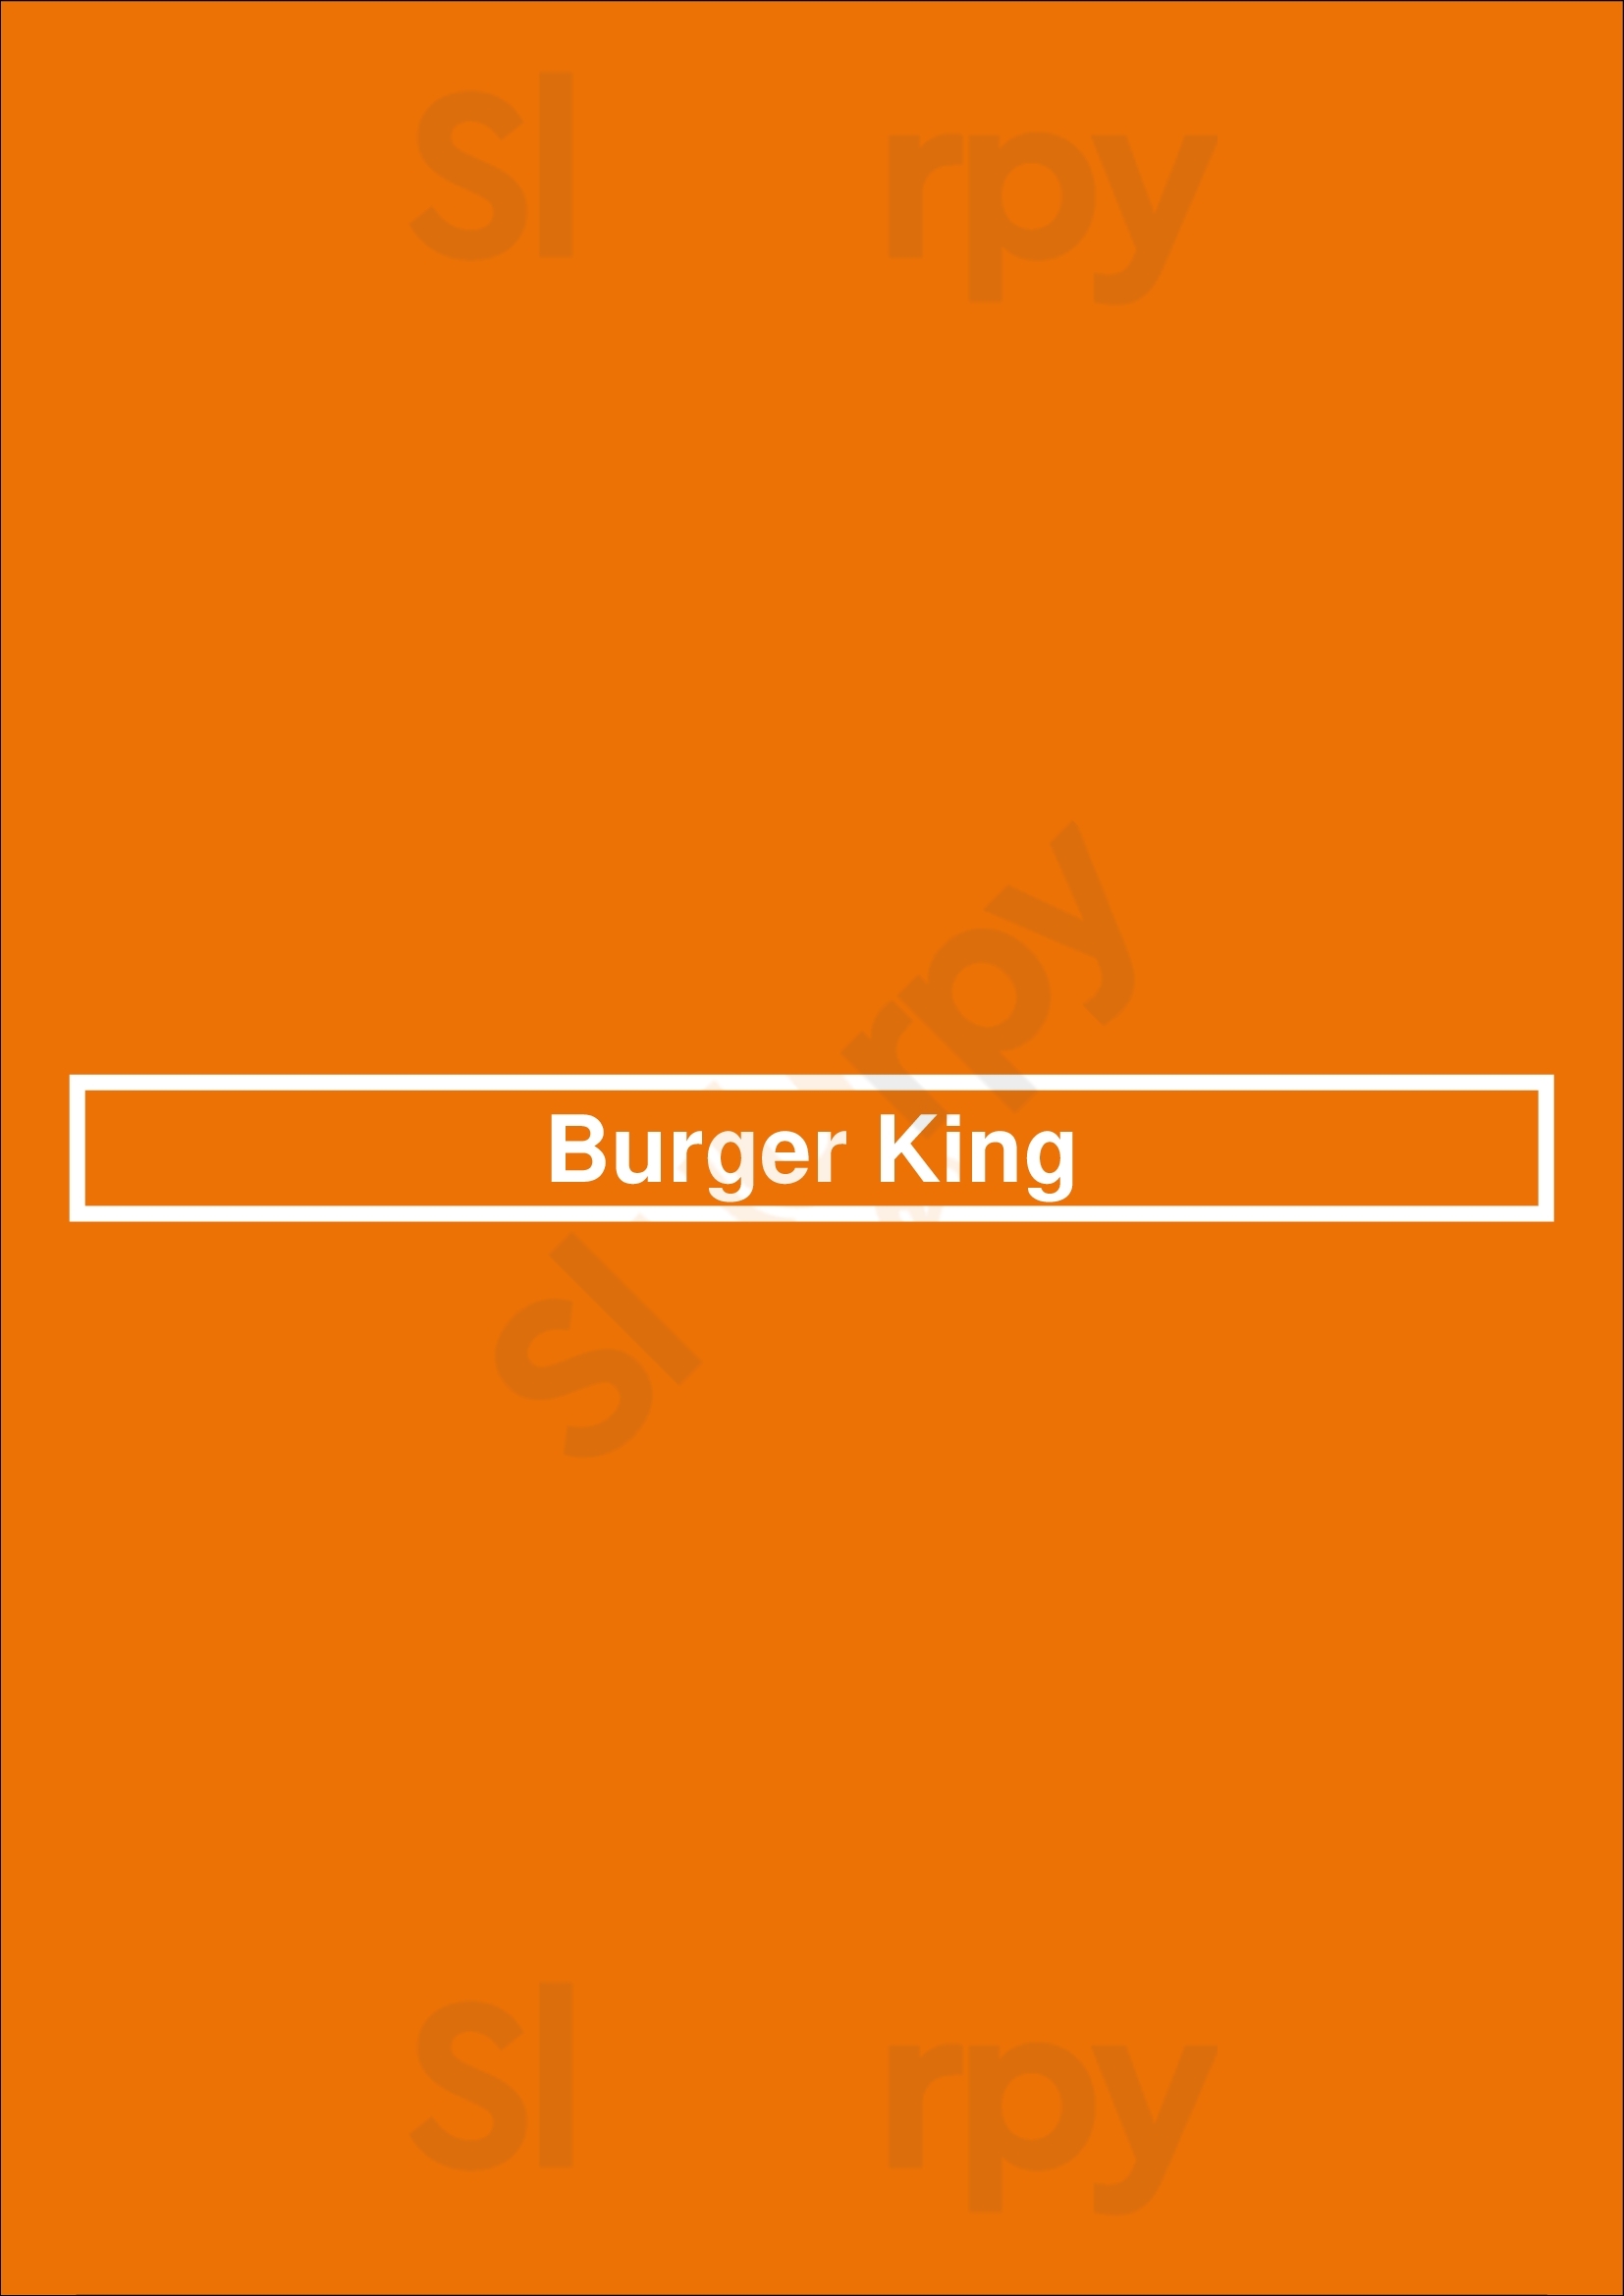 Burger King Portage Menu - 1